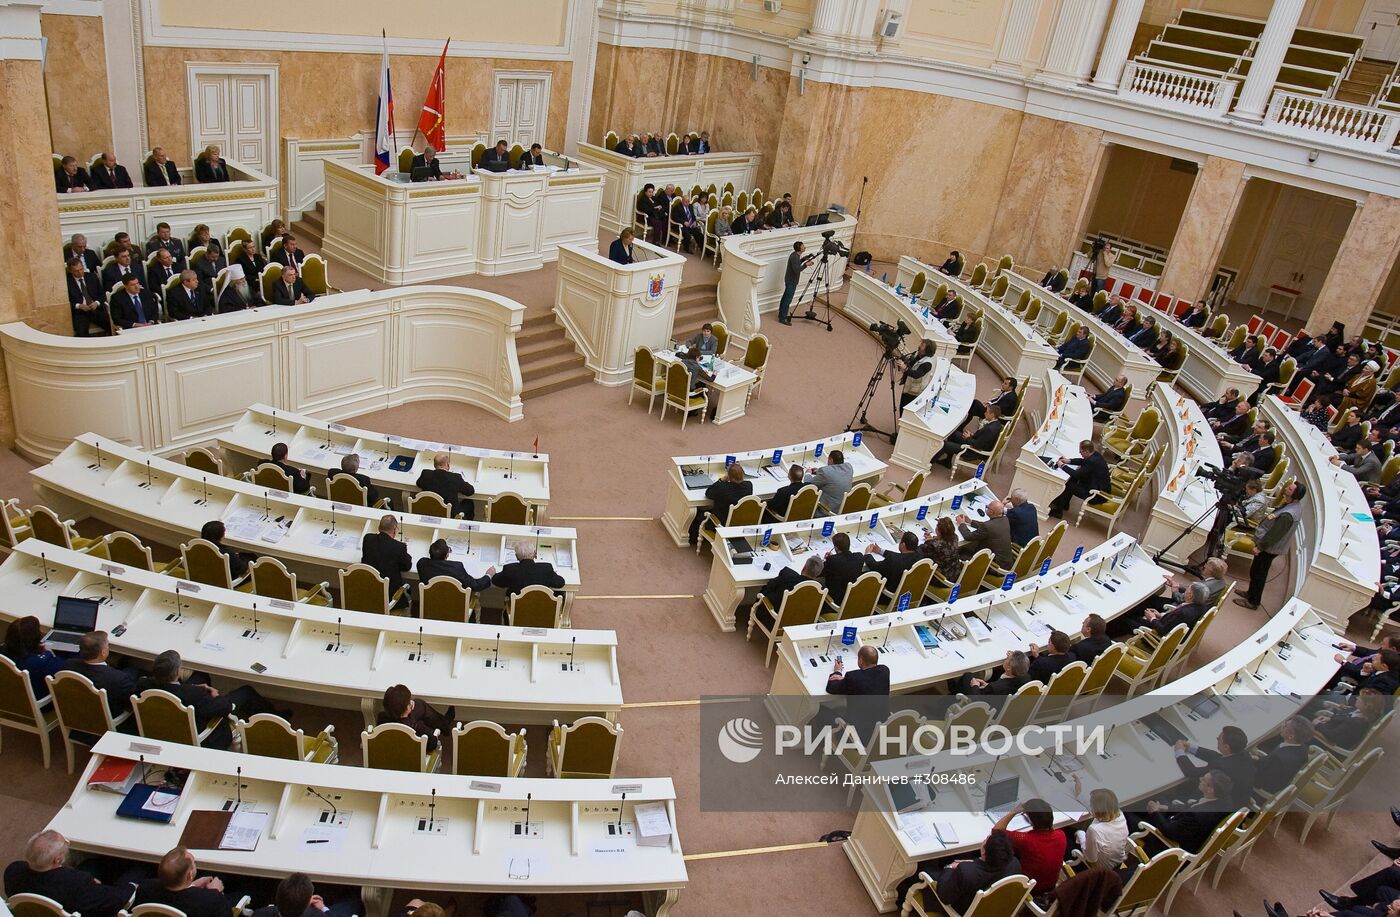 Ежегодное послание губернатора Санкт-Петербурга Законодательному Собранию